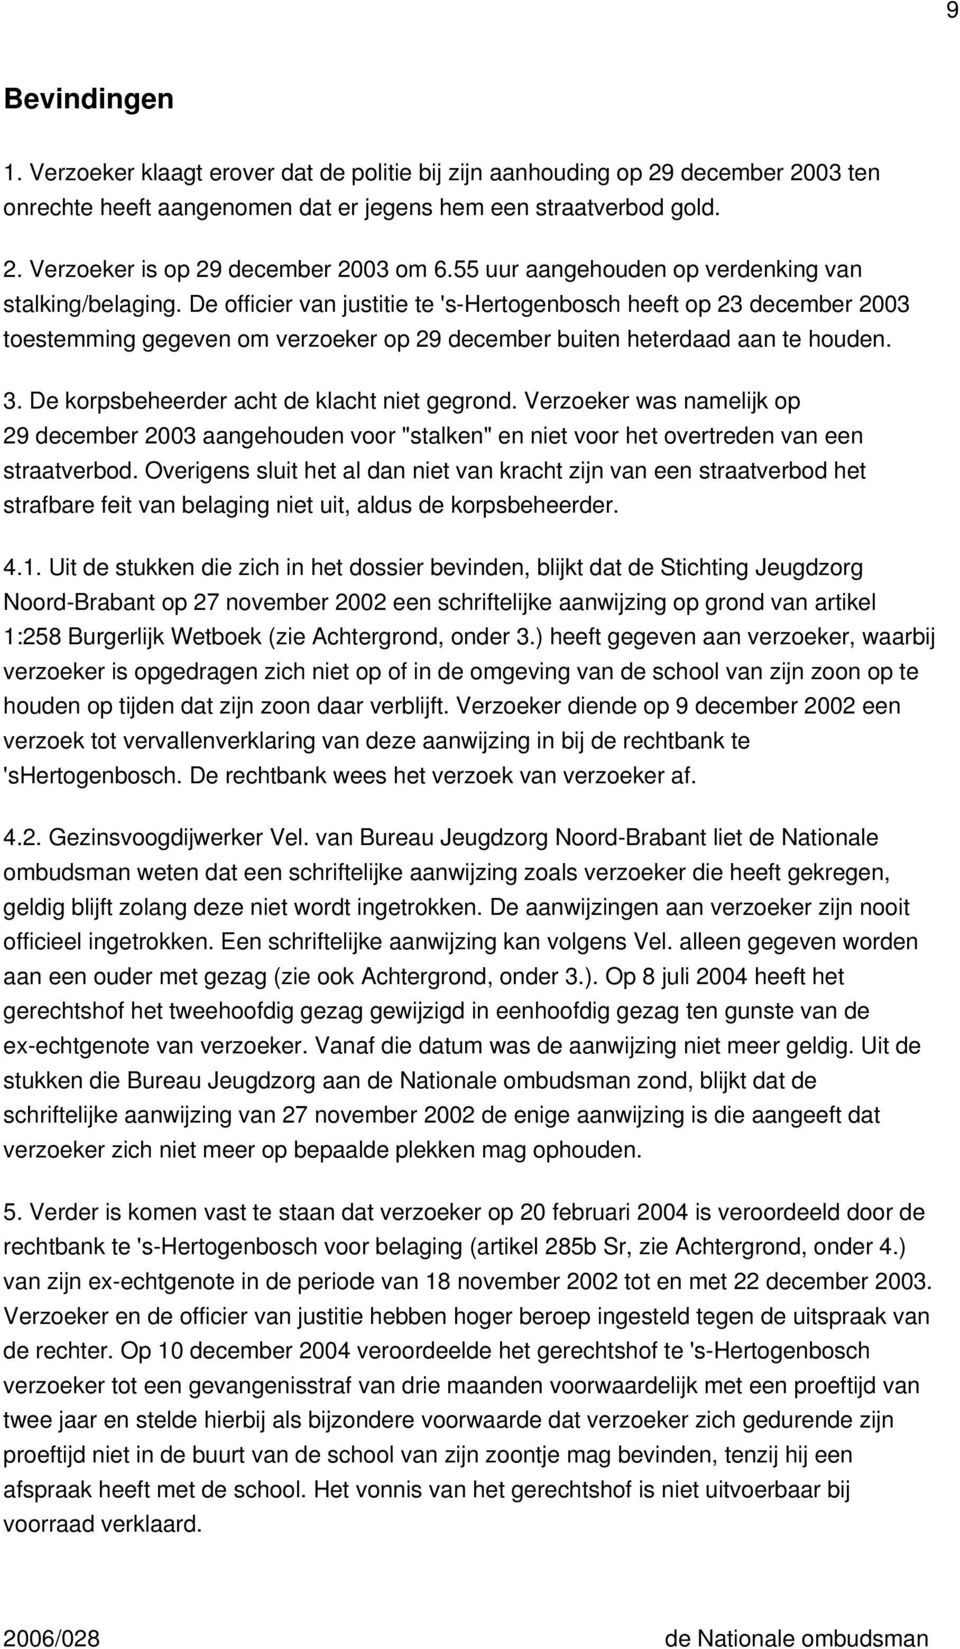 De officier van justitie te 's-hertogenbosch heeft op 23 december 2003 toestemming gegeven om verzoeker op 29 december buiten heterdaad aan te houden. 3. De korpsbeheerder acht de klacht niet gegrond.